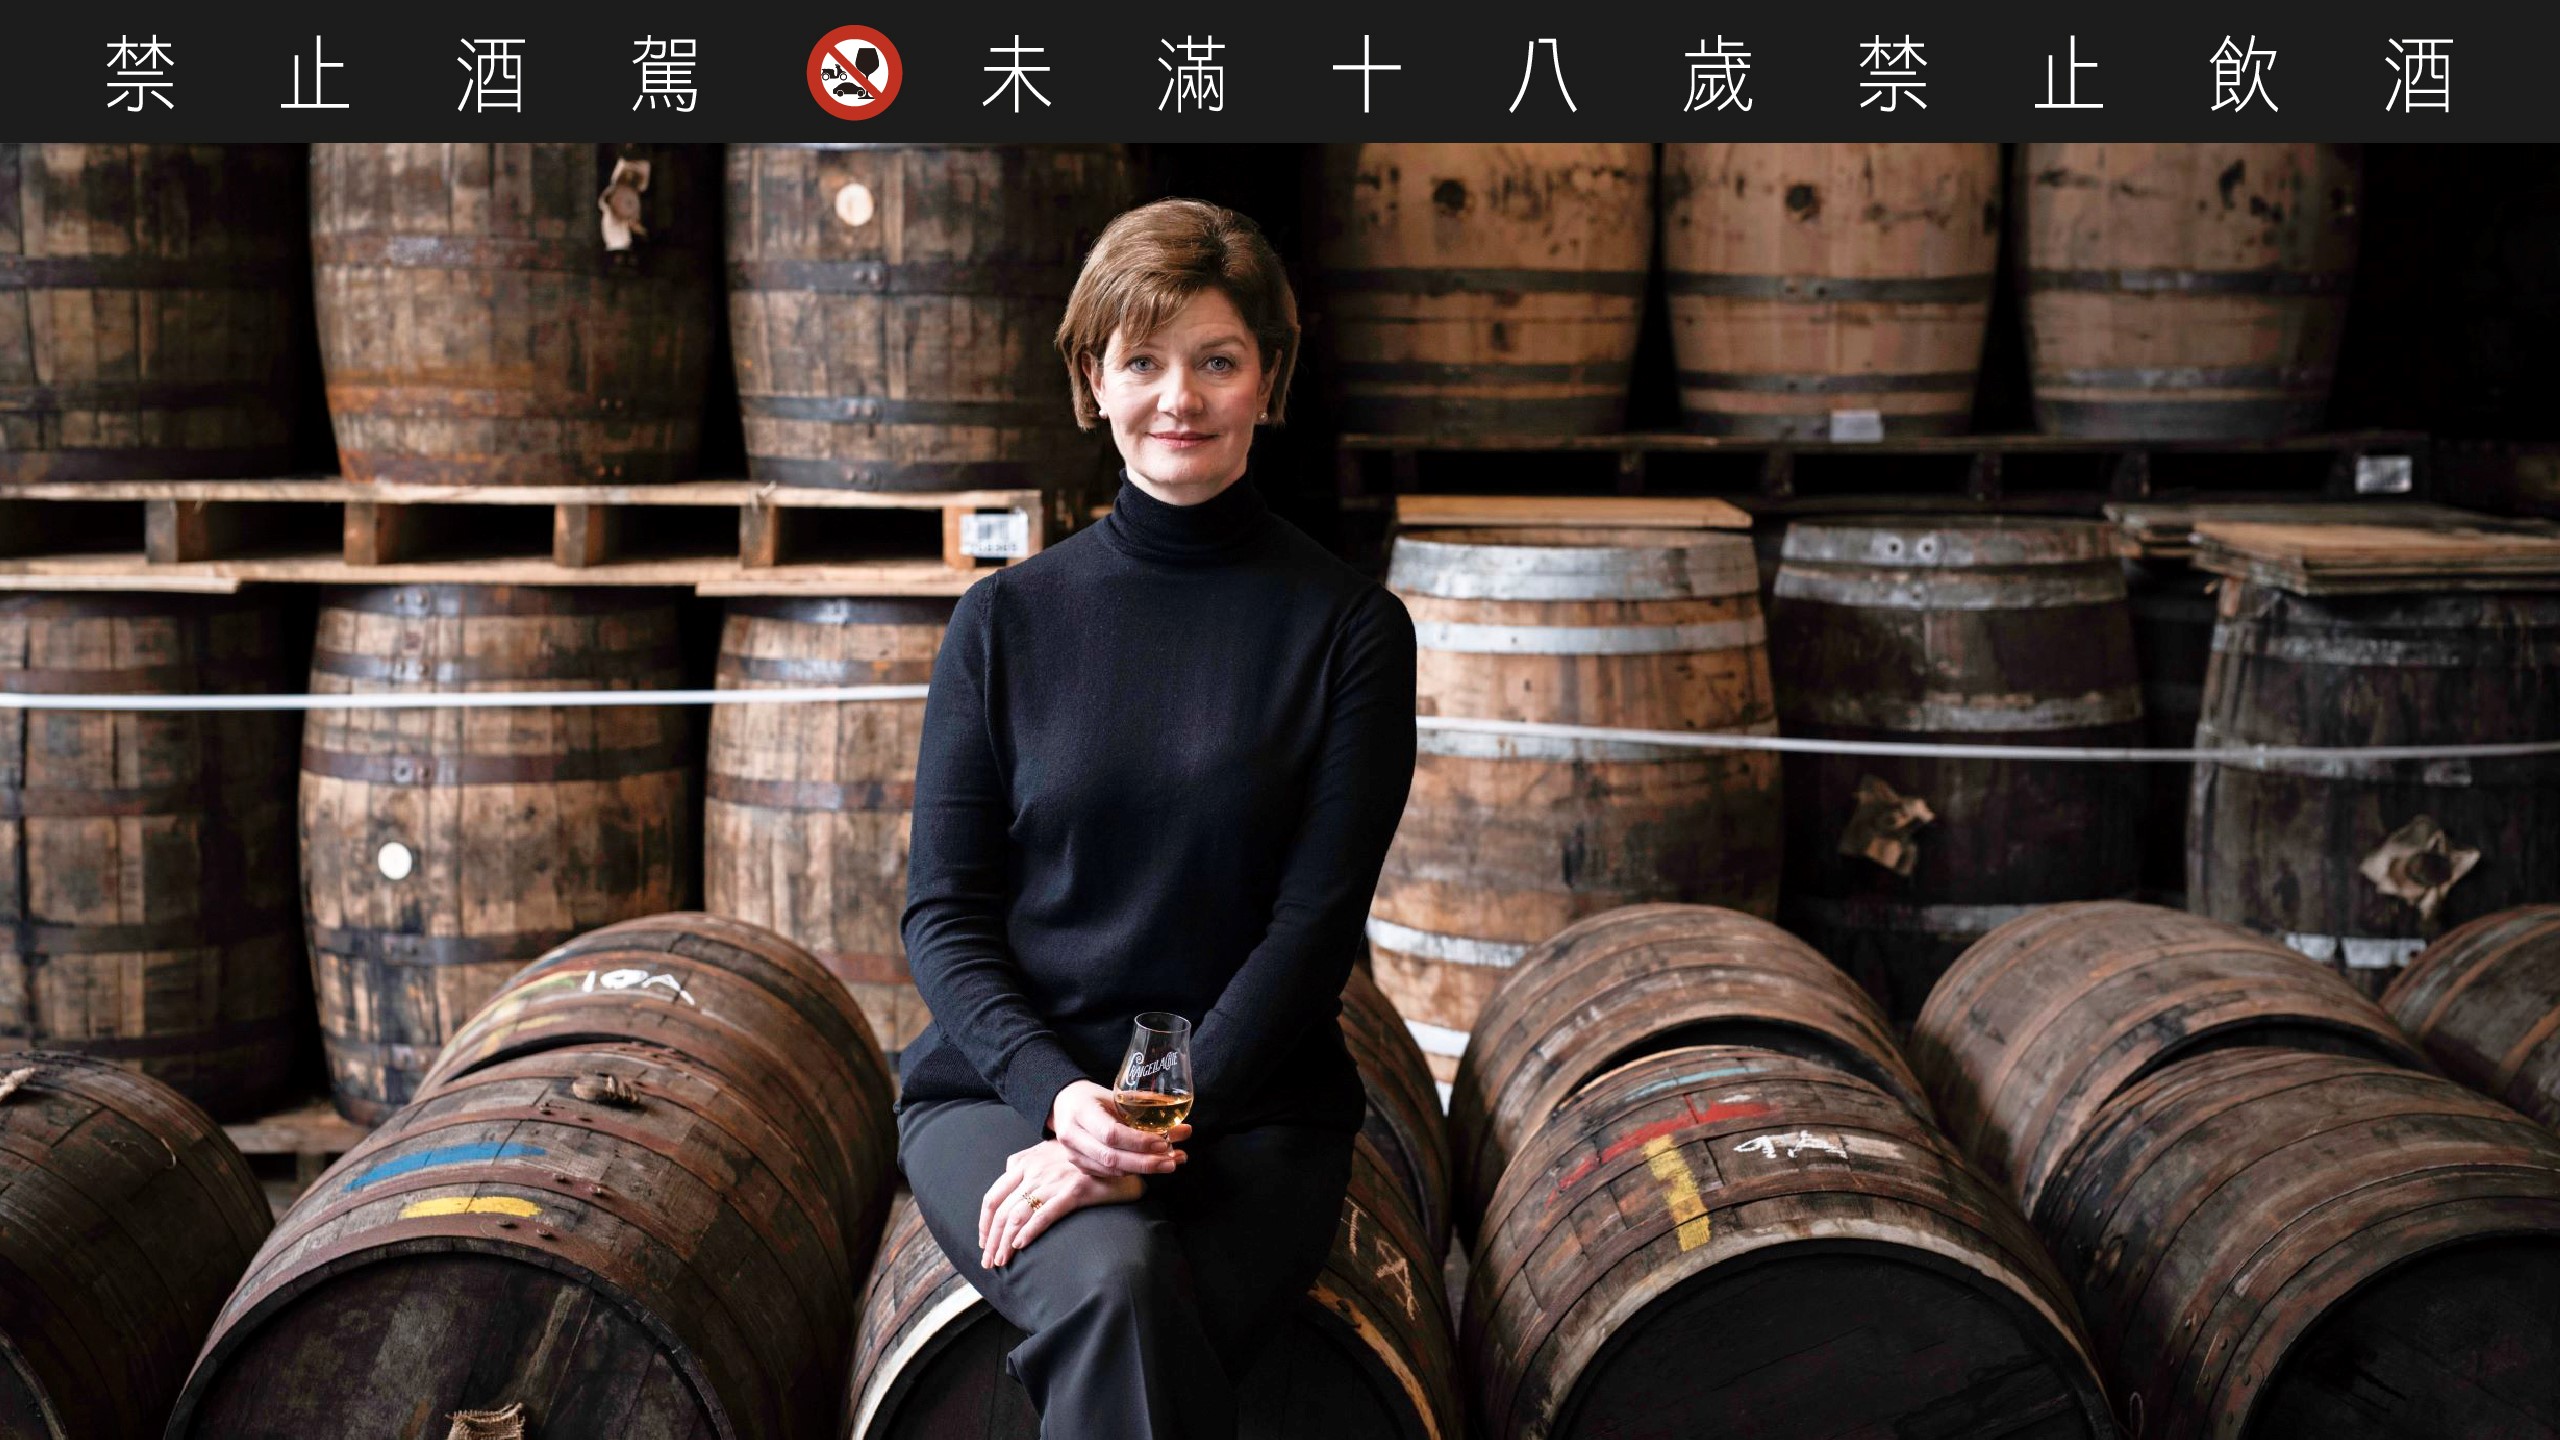 皇家柏克萊酒廠首席調酒師 Stephanie MacLeod，連續兩年榮獲國際威士忌大賽（International Whisky Competition）年度最佳調酒大師。